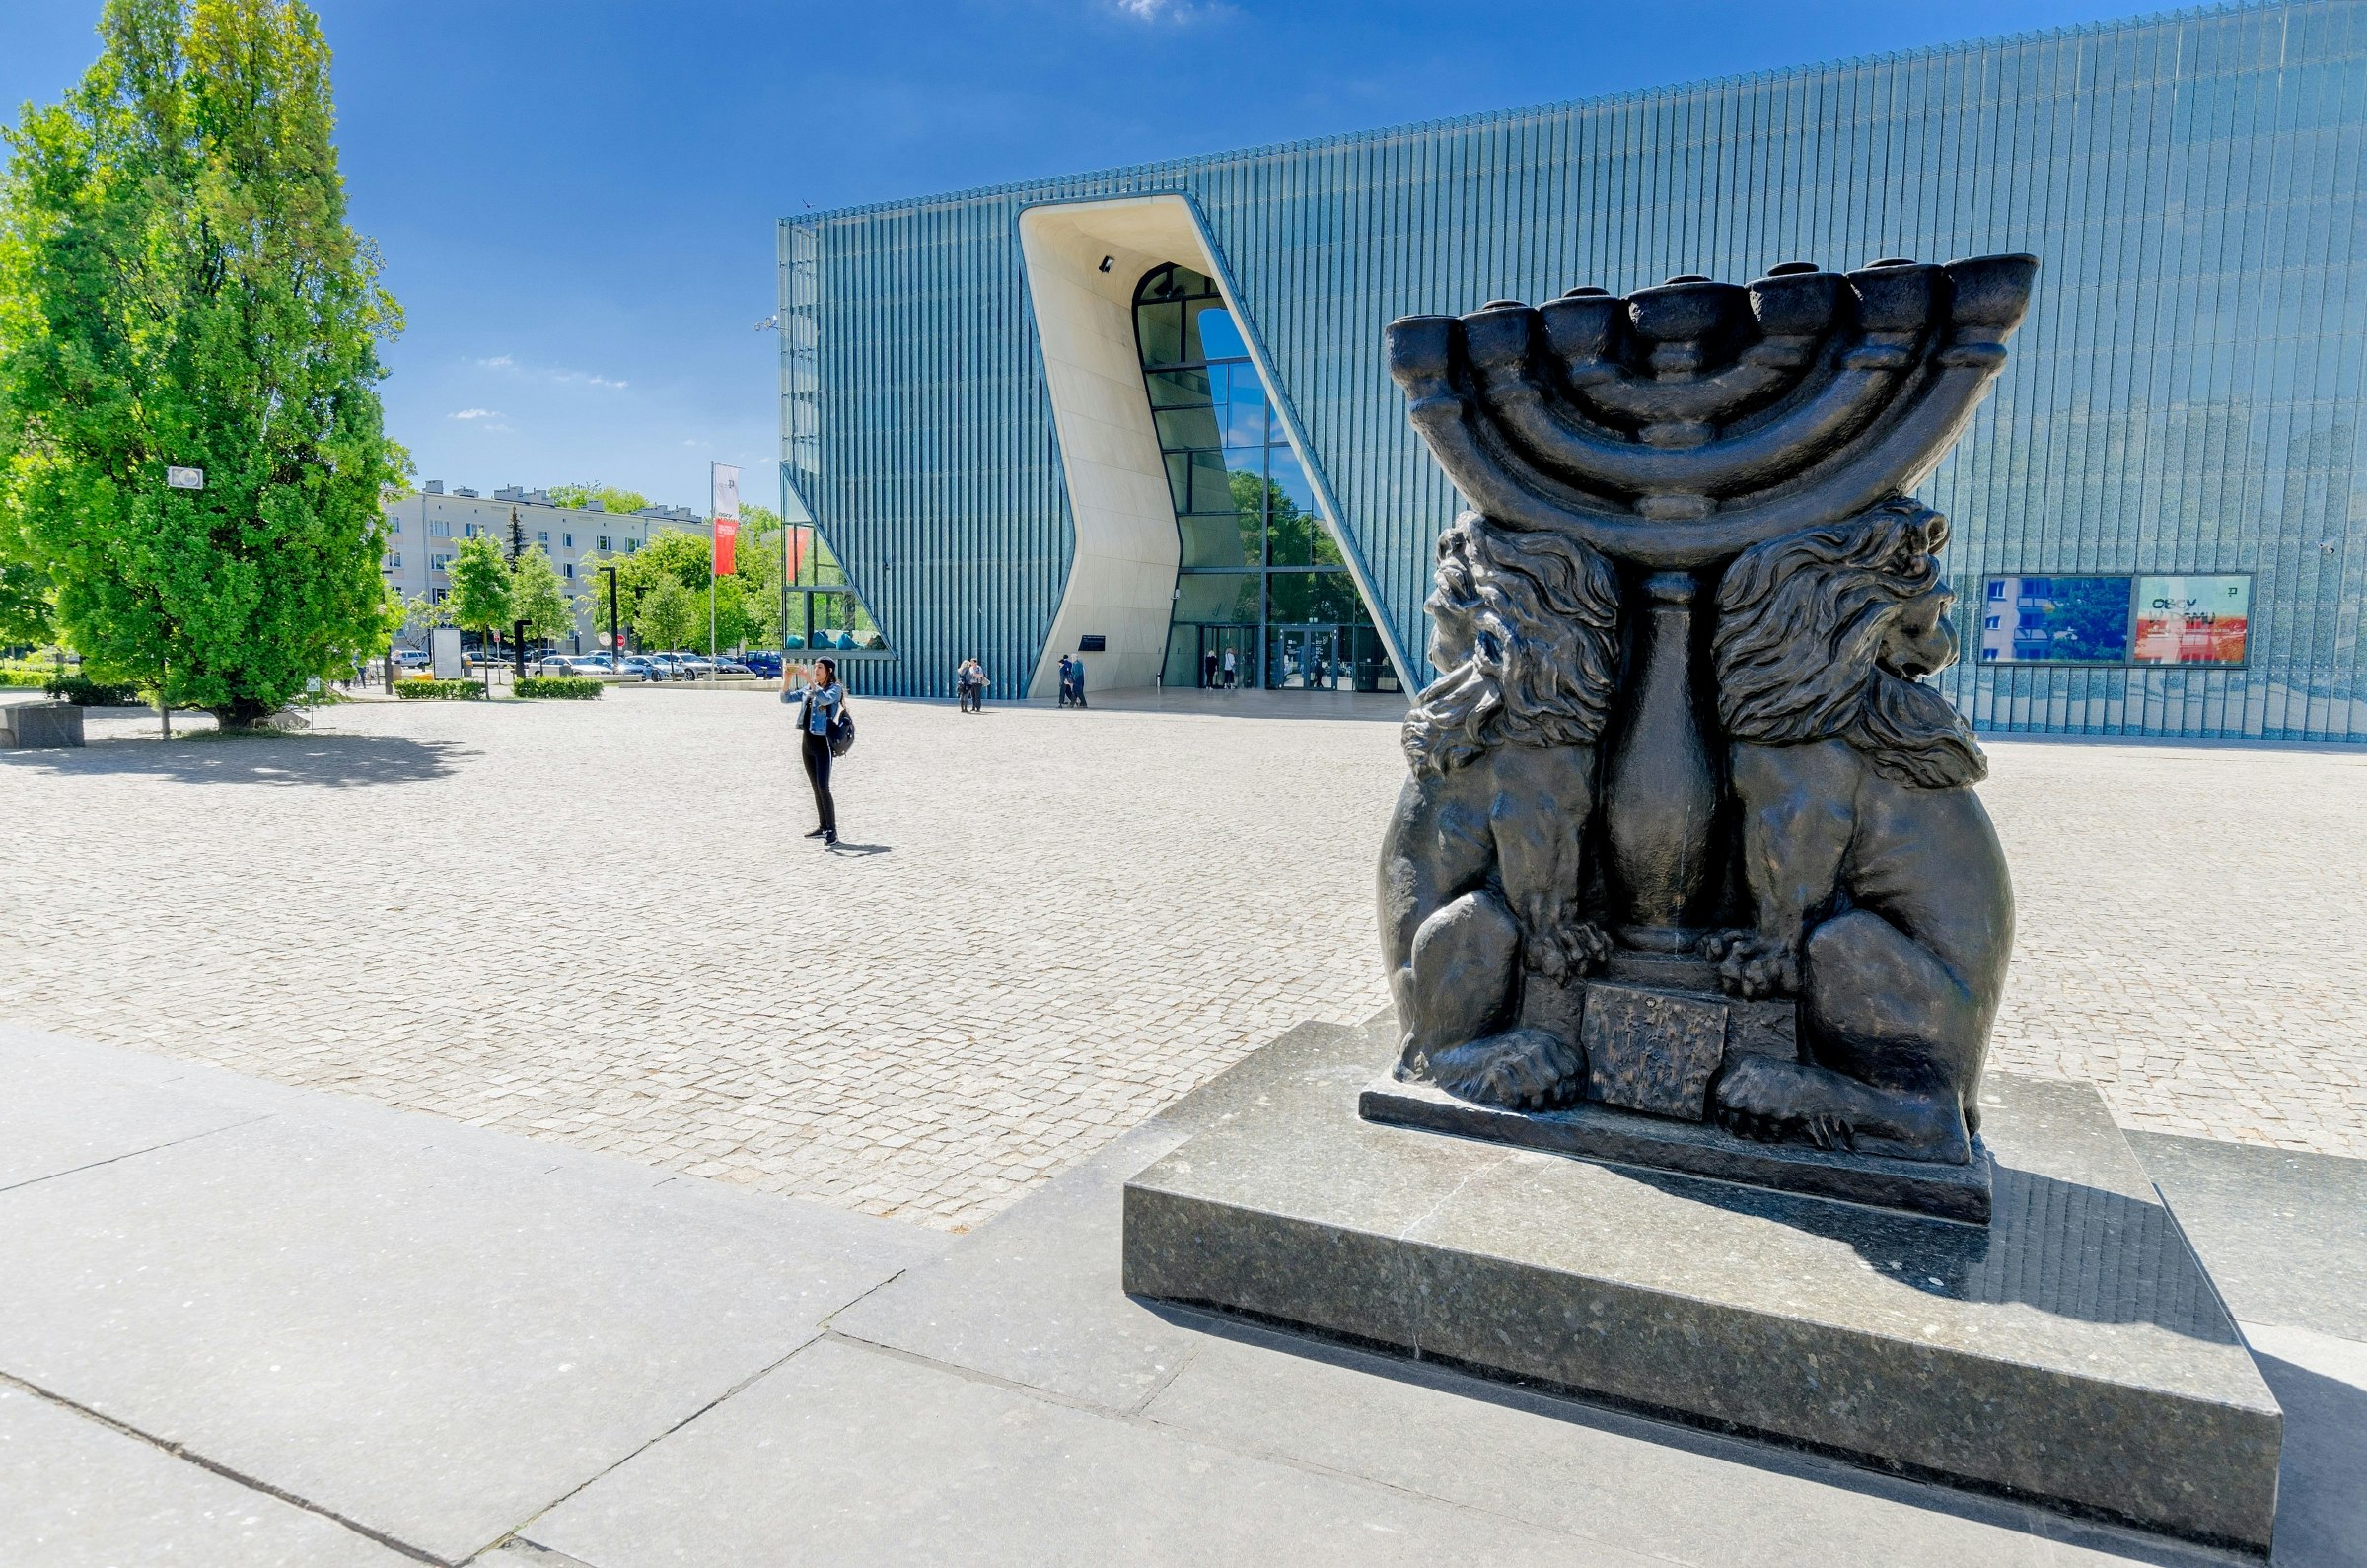 En skulptur av en menorah står på ett öppet torg.  En modern museibyggnad i glas och stål står bakom